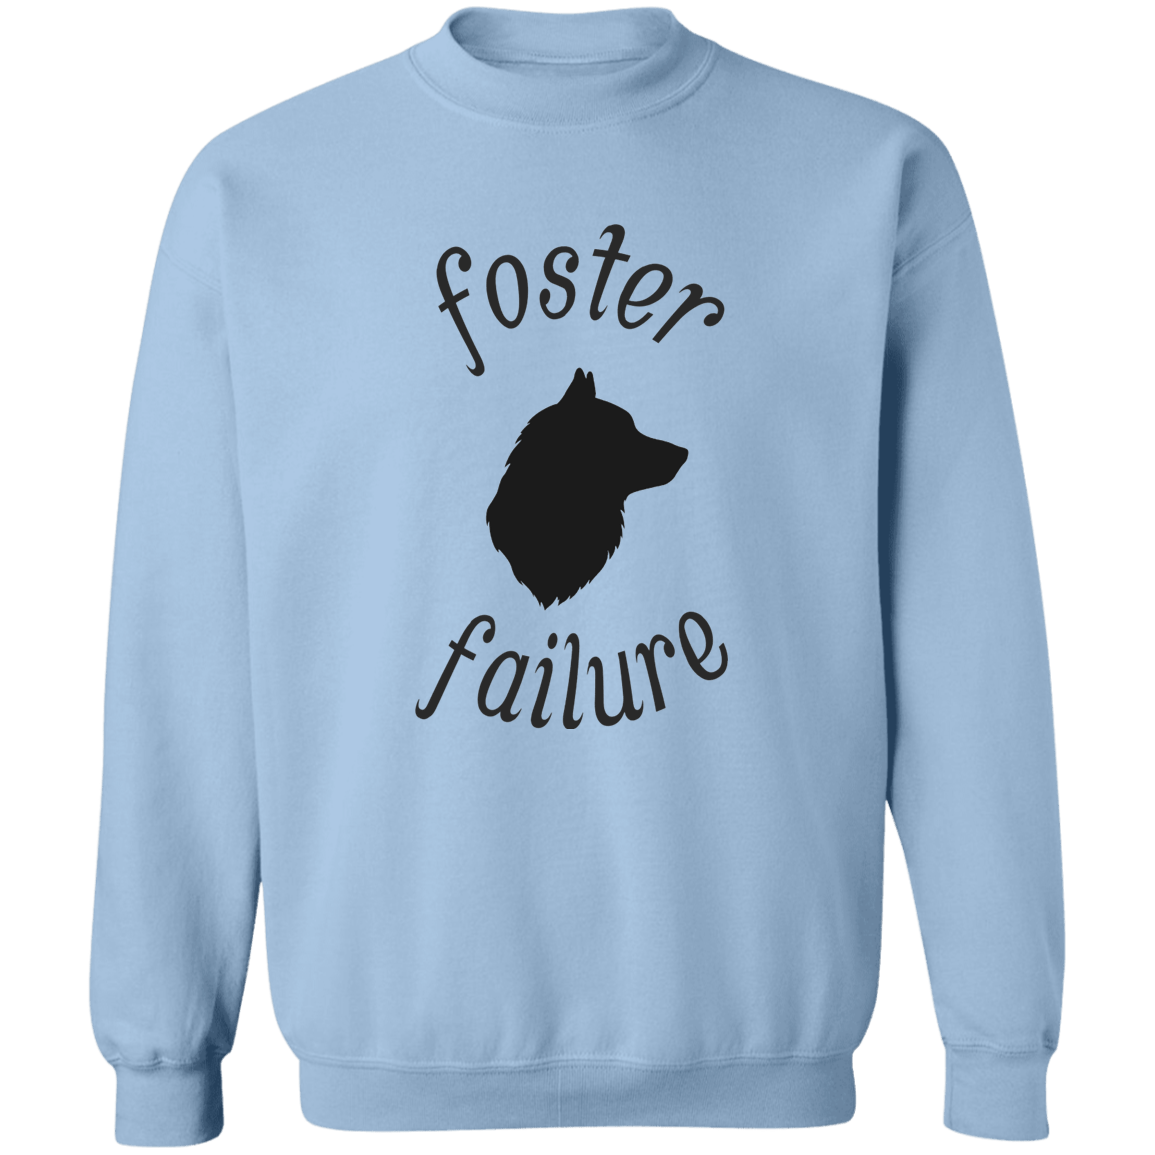 Foster Failure Dog - Sweatshirt.